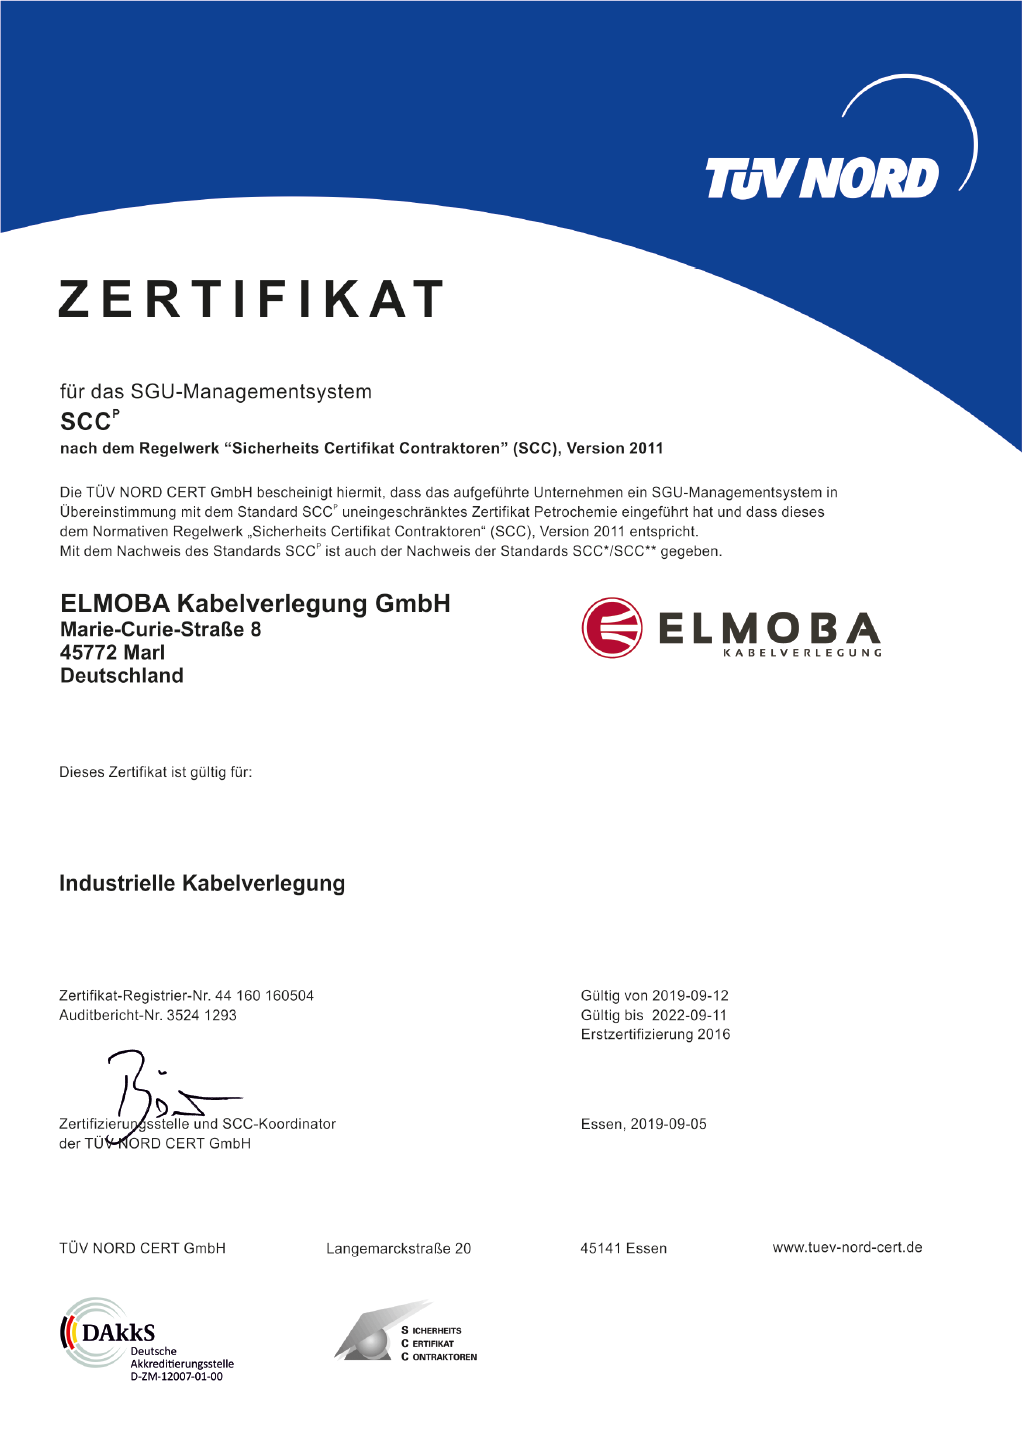 Zertifikat - Elmoba Kabelverlegung GmbH in Marl und Chur